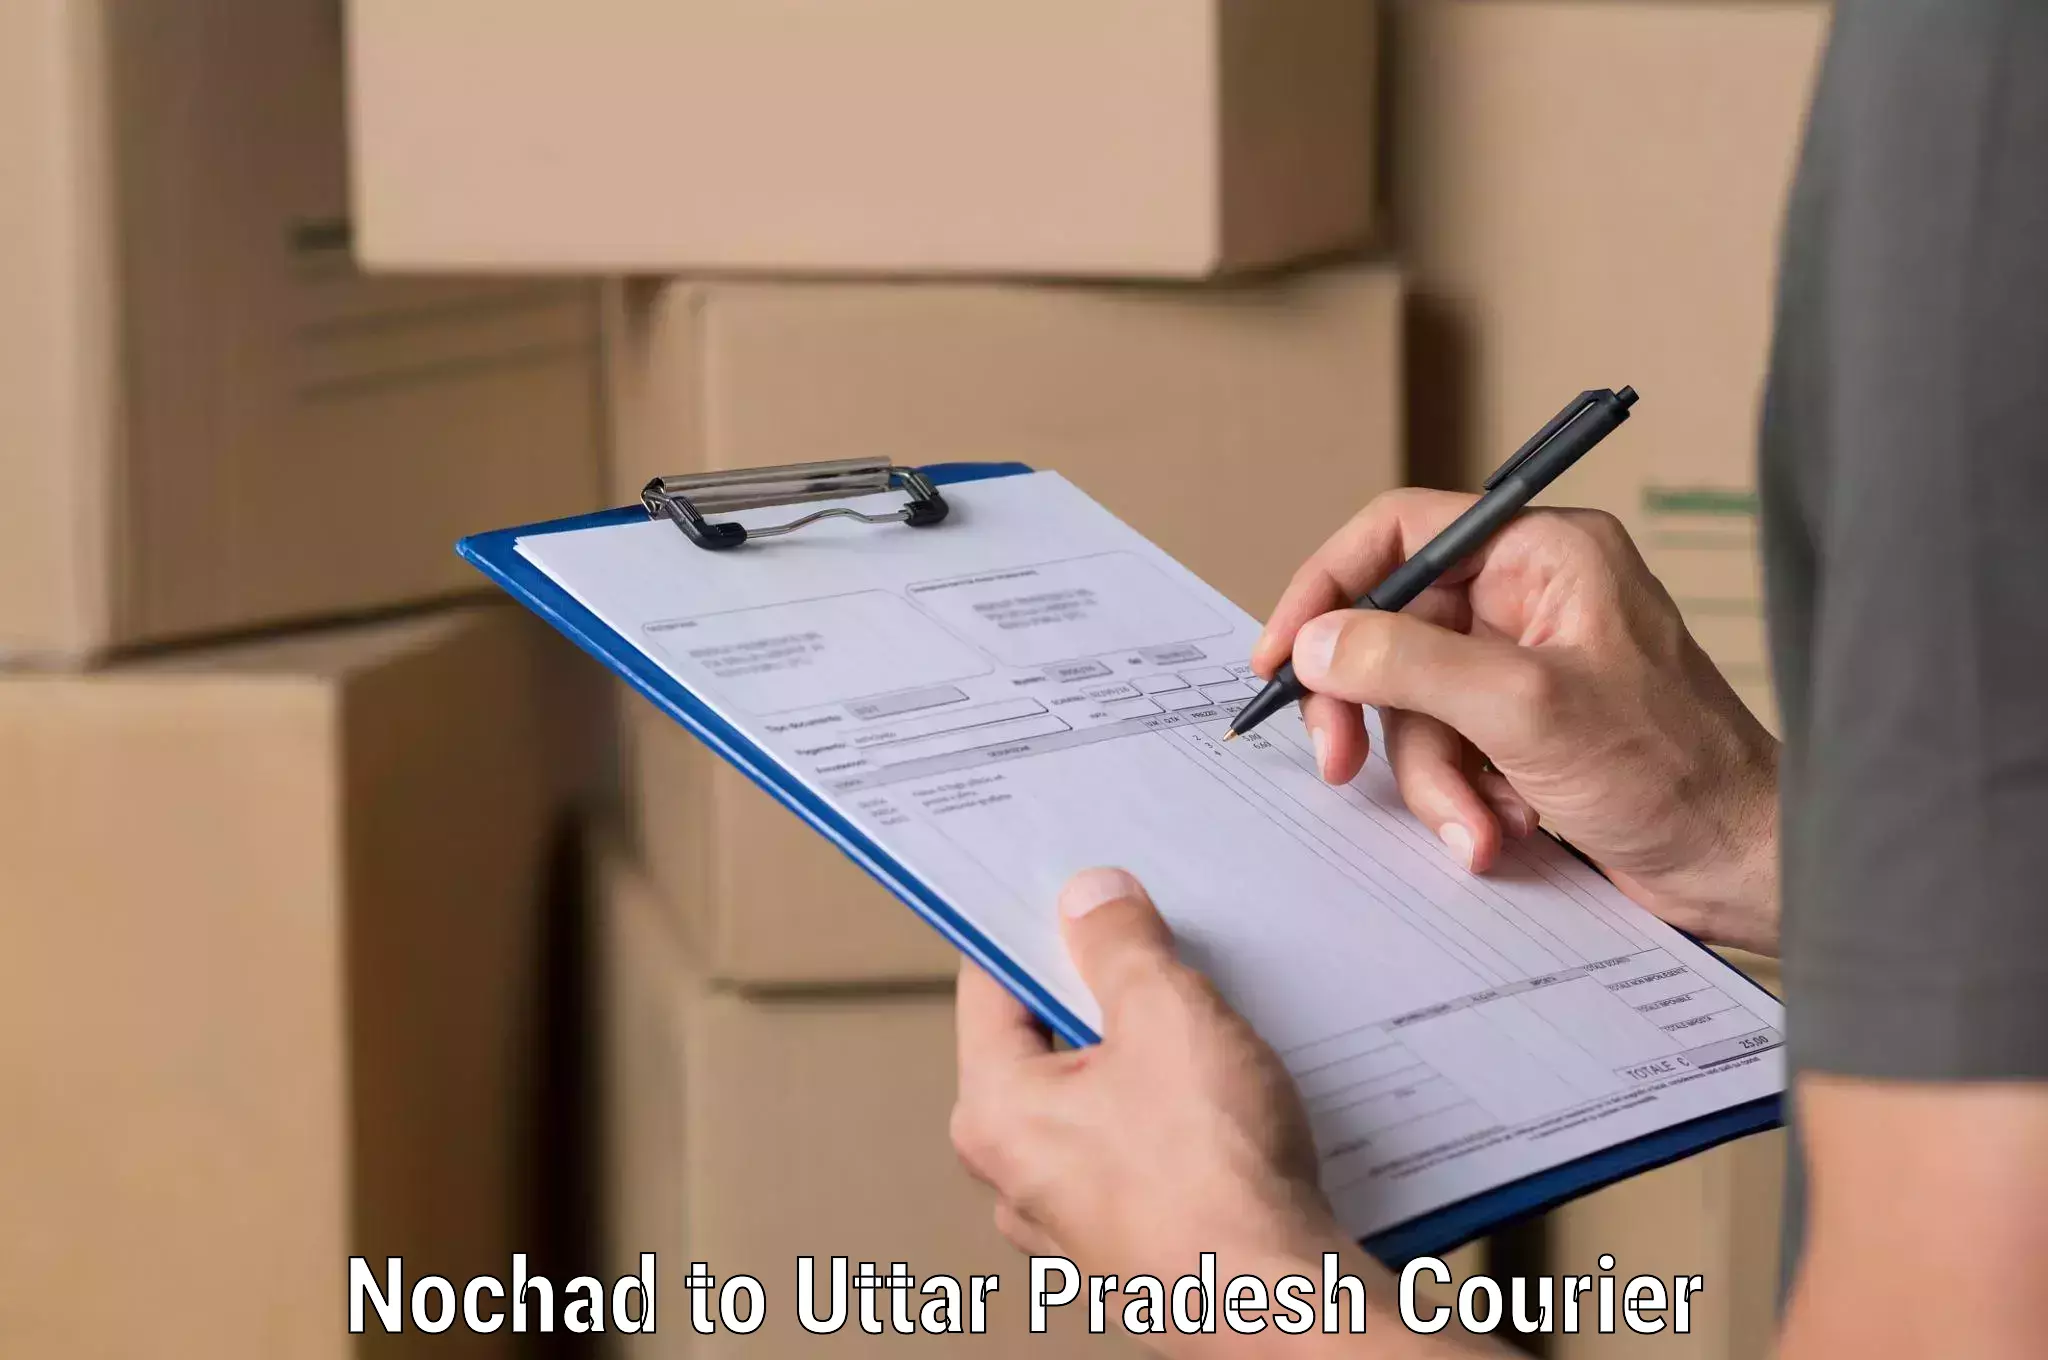 High-speed parcel service Nochad to Uttar Pradesh